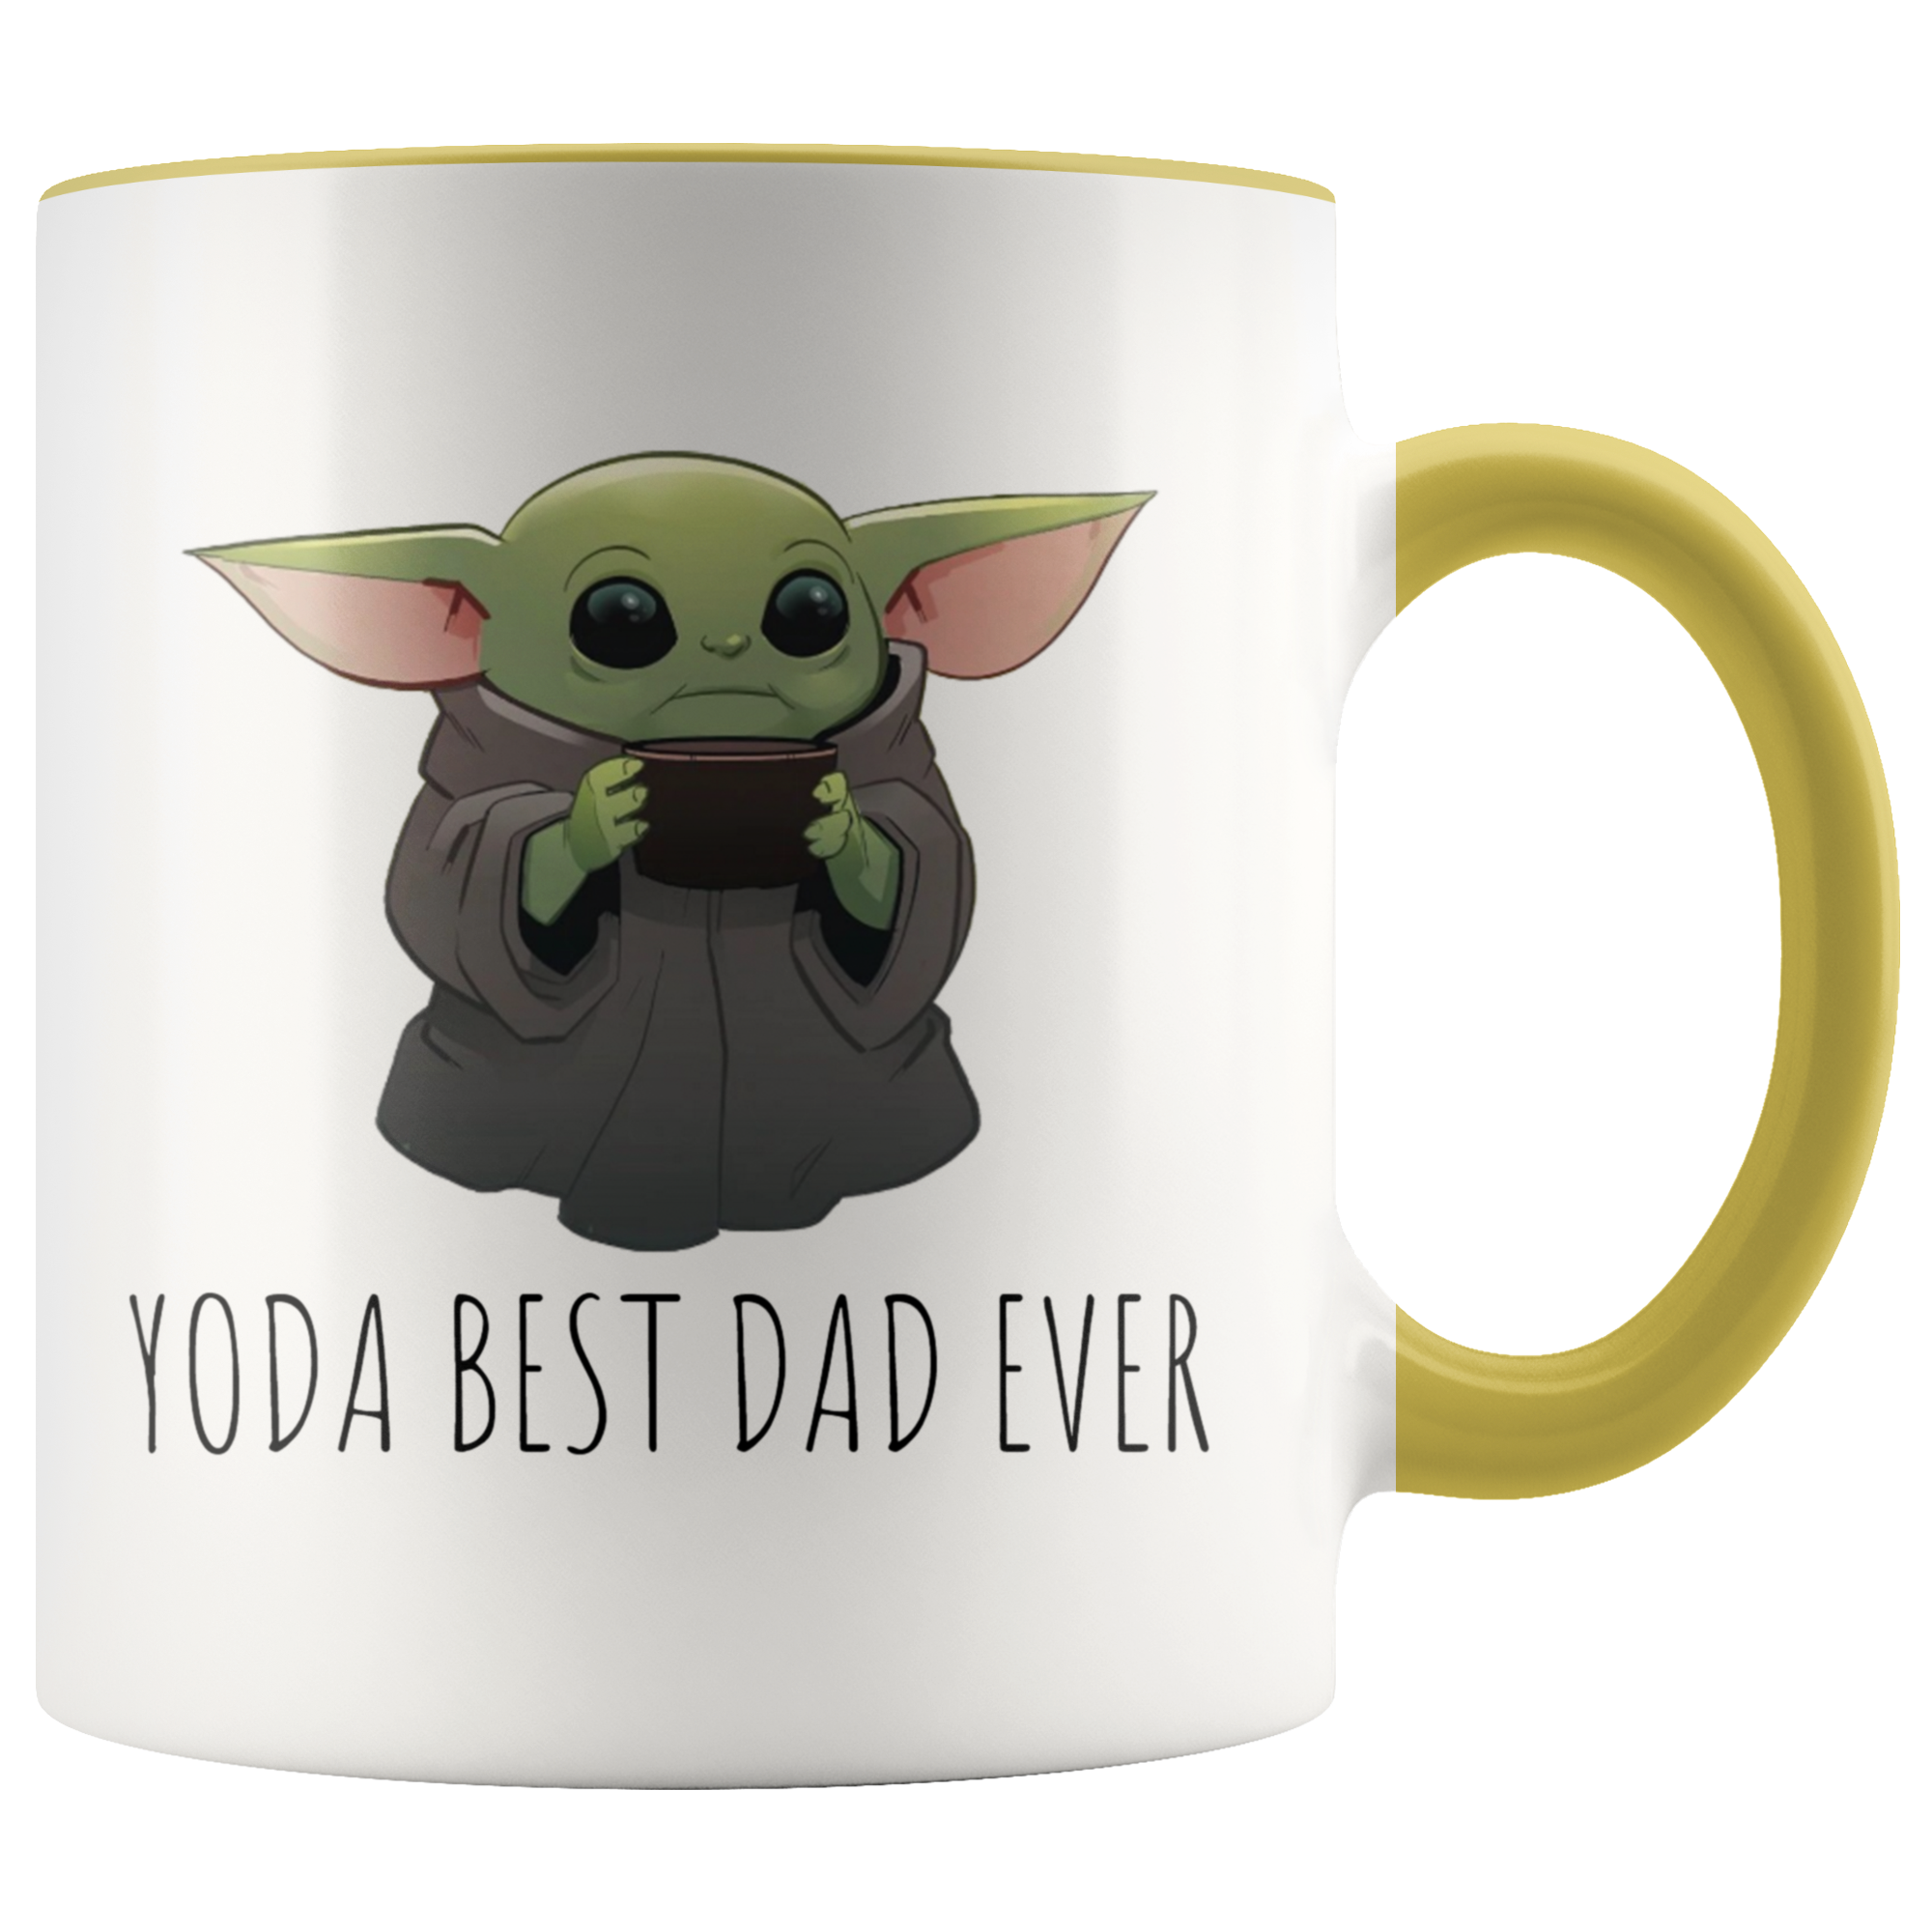 Yoda Best Dad Ever Mug